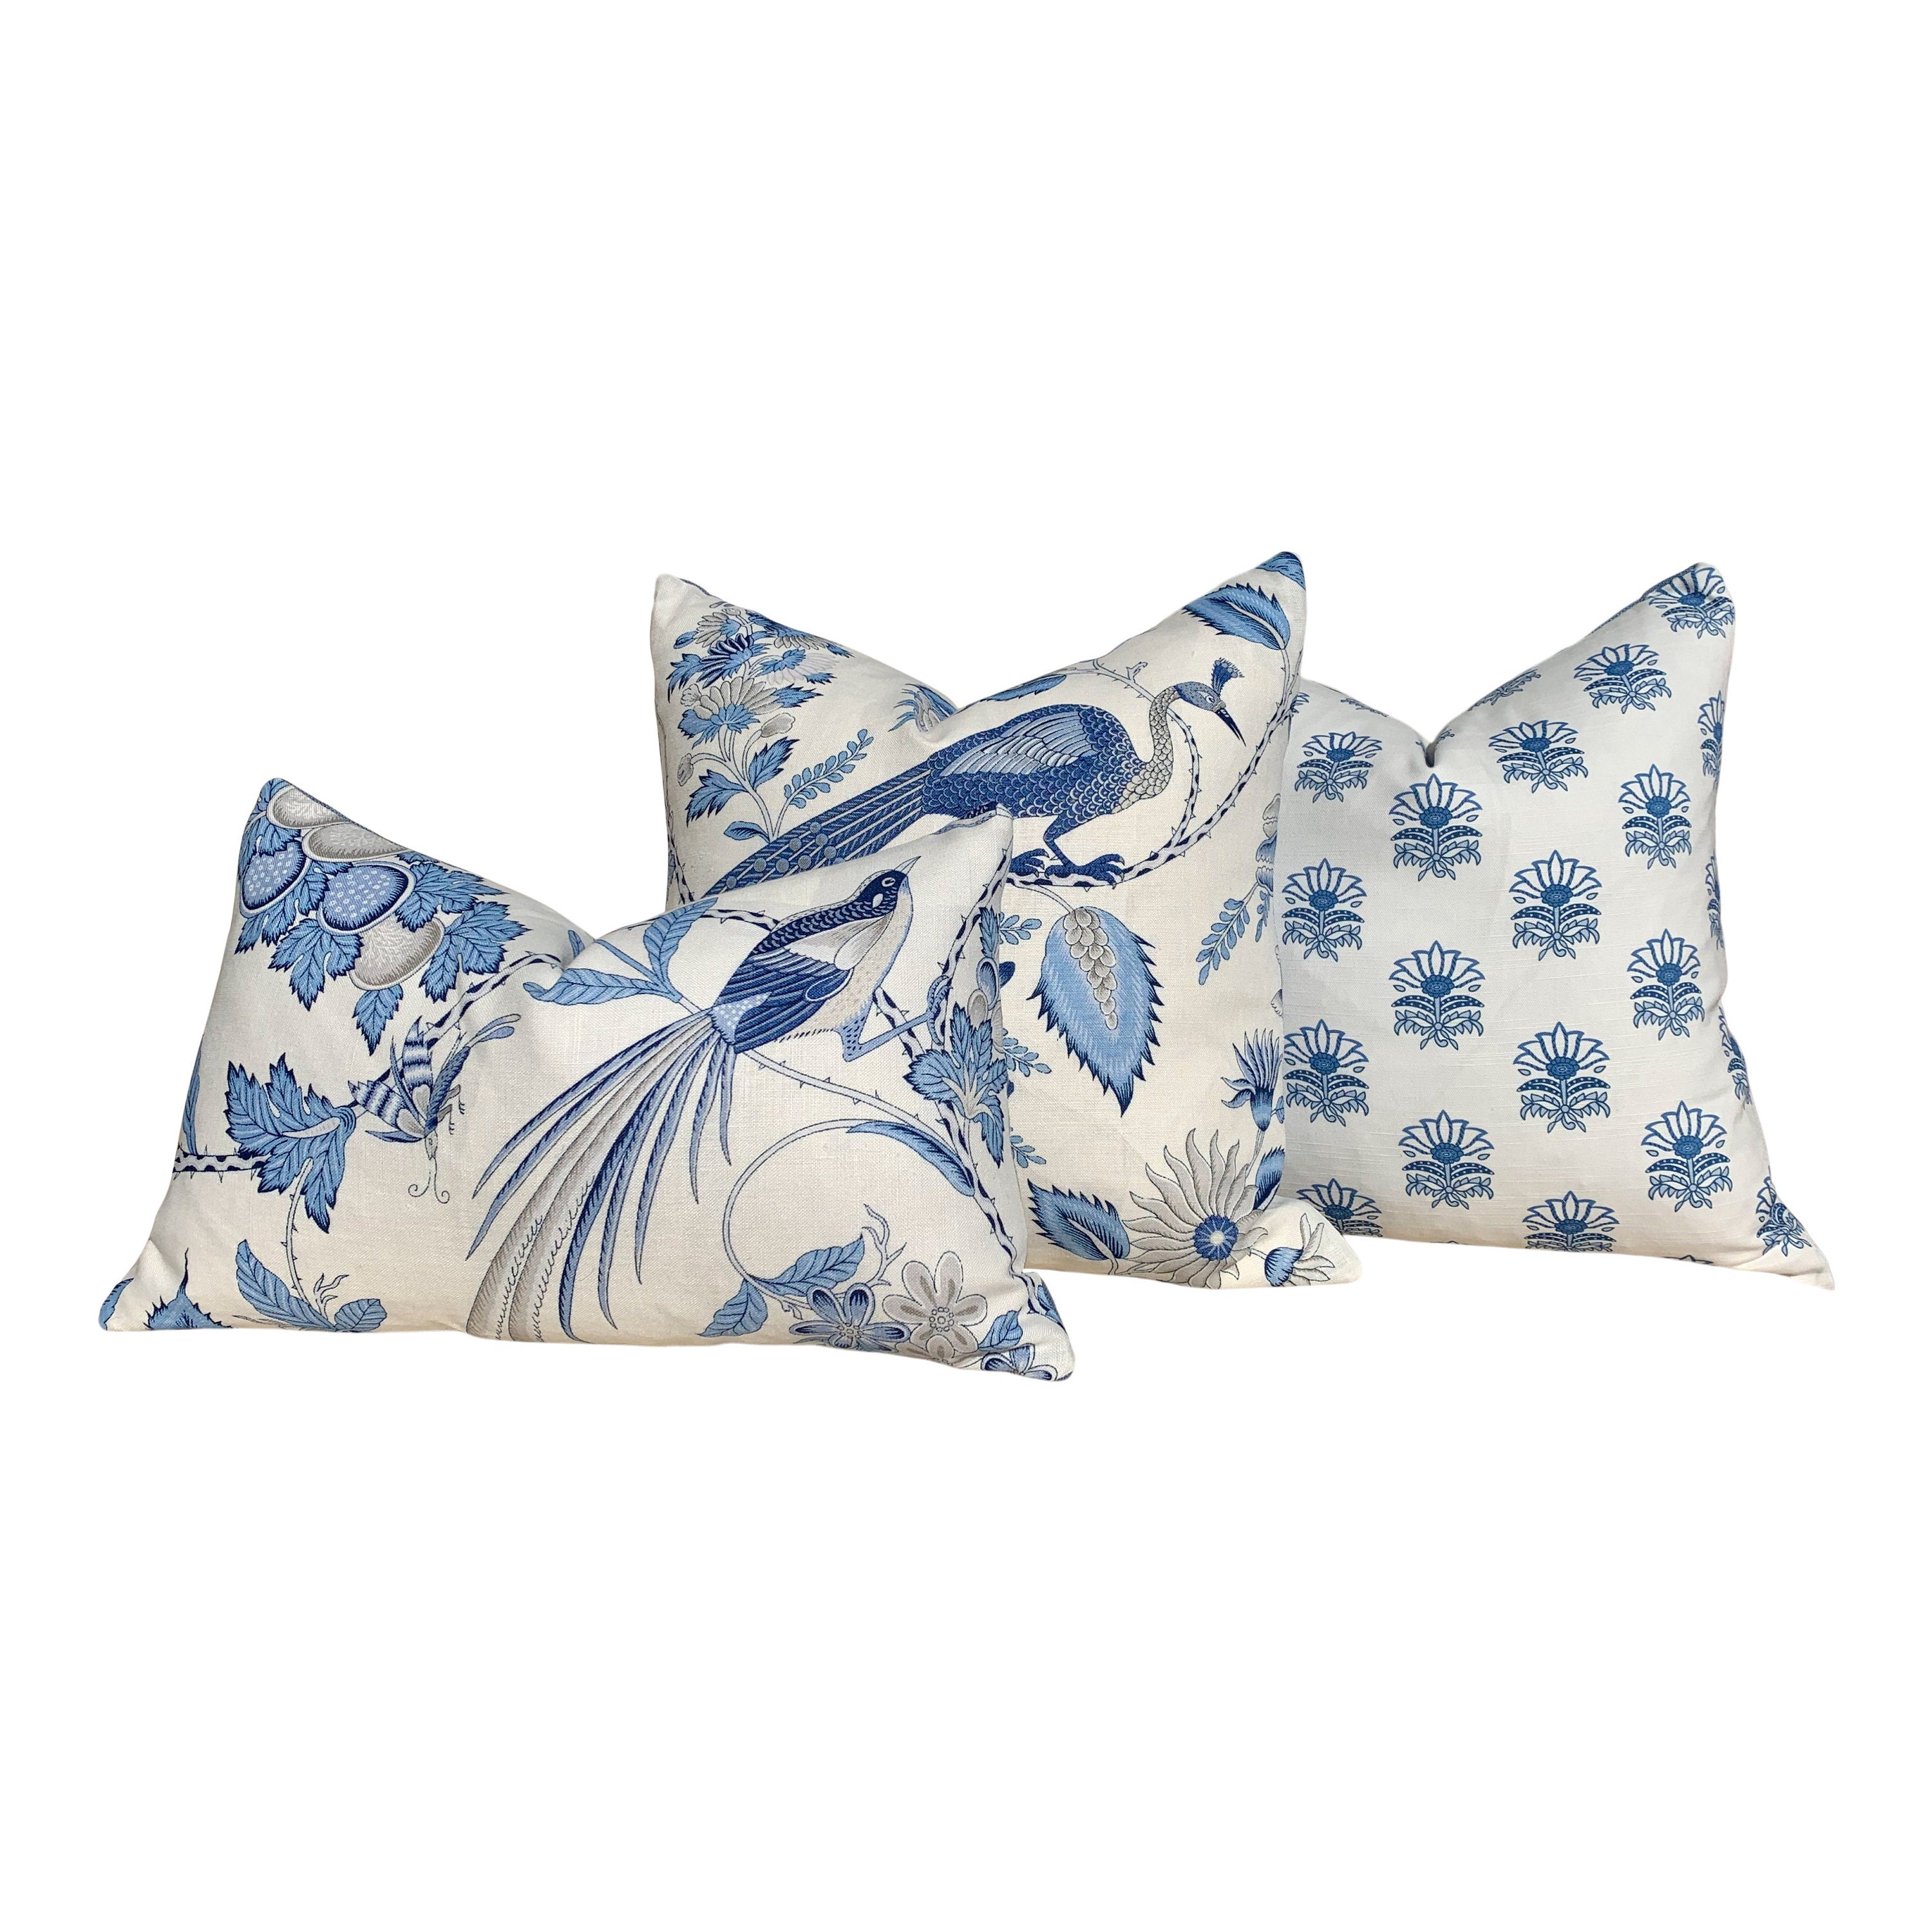 Schumacher Champagne Pillow in Blue and Gris. Lumbar Linen Pillow, designer pillow, accent cushion cover, decorative pillow